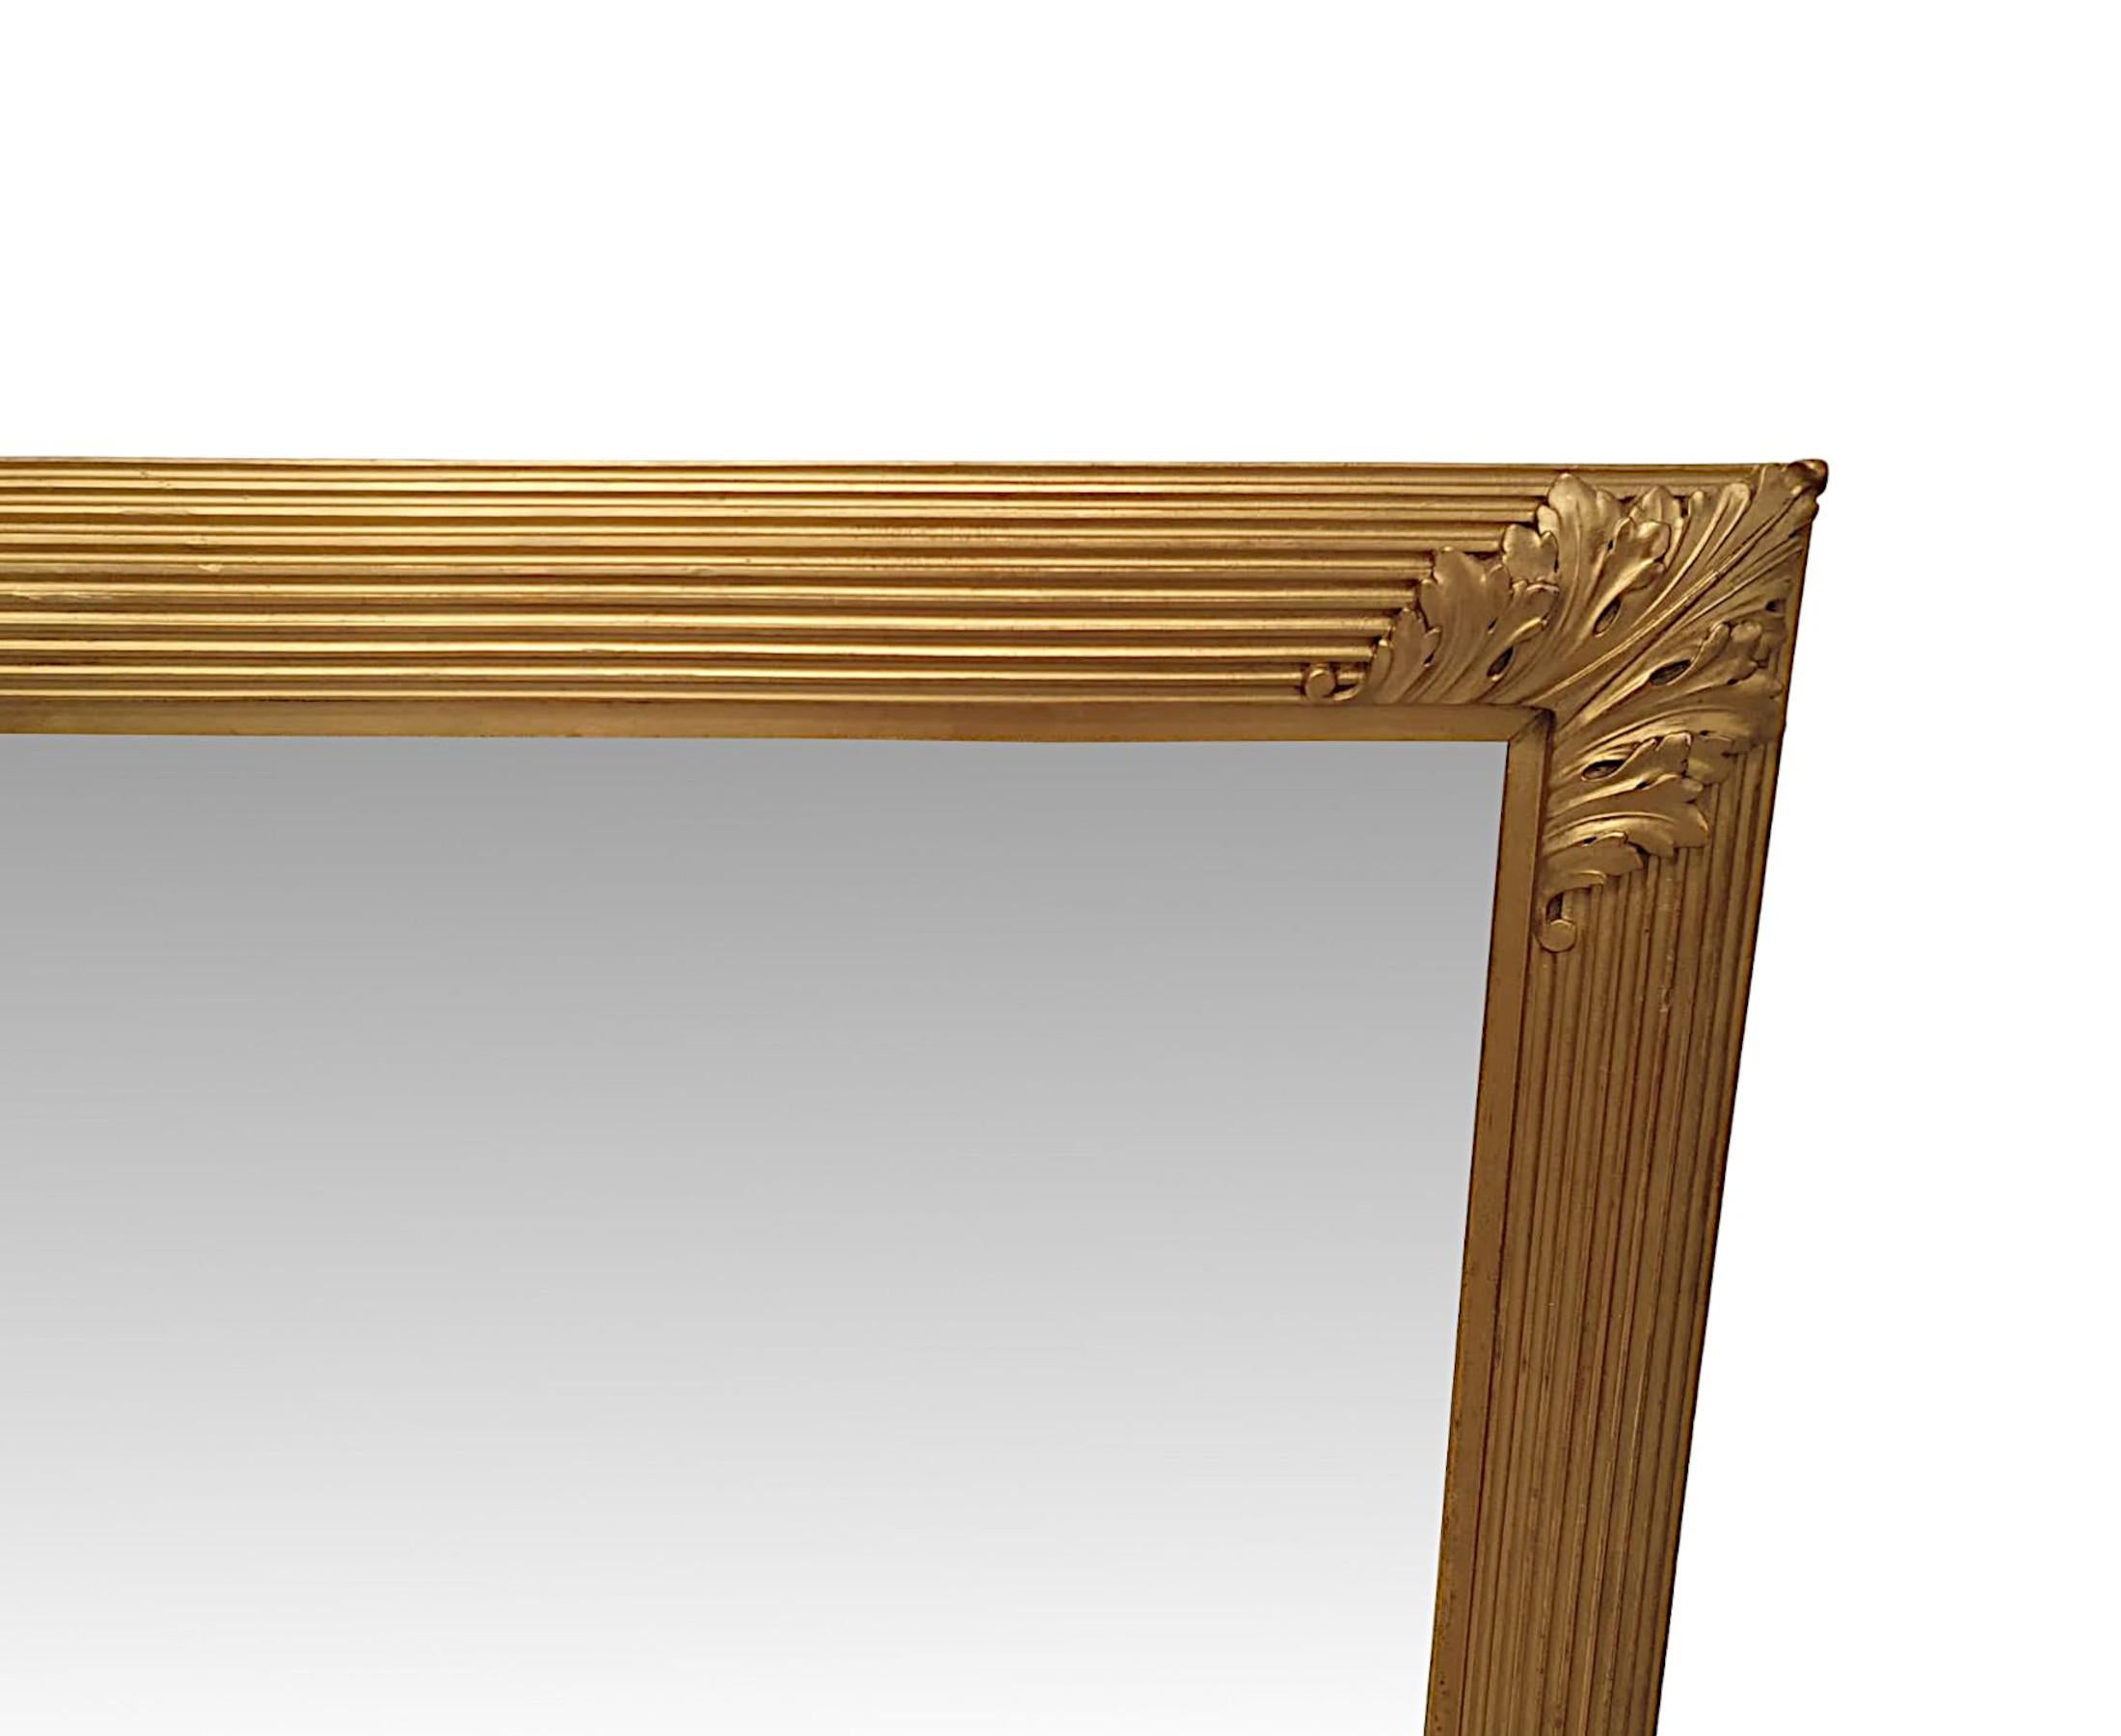 Un fantastique miroir d'entrée ou de cheminée en bois doré du 19ème siècle de grandes proportions. La plaque de miroir de forme rectangulaire se trouve dans un élégant cadre simple en bois doré moulé, sculpté à la main, avec des détails en creux et